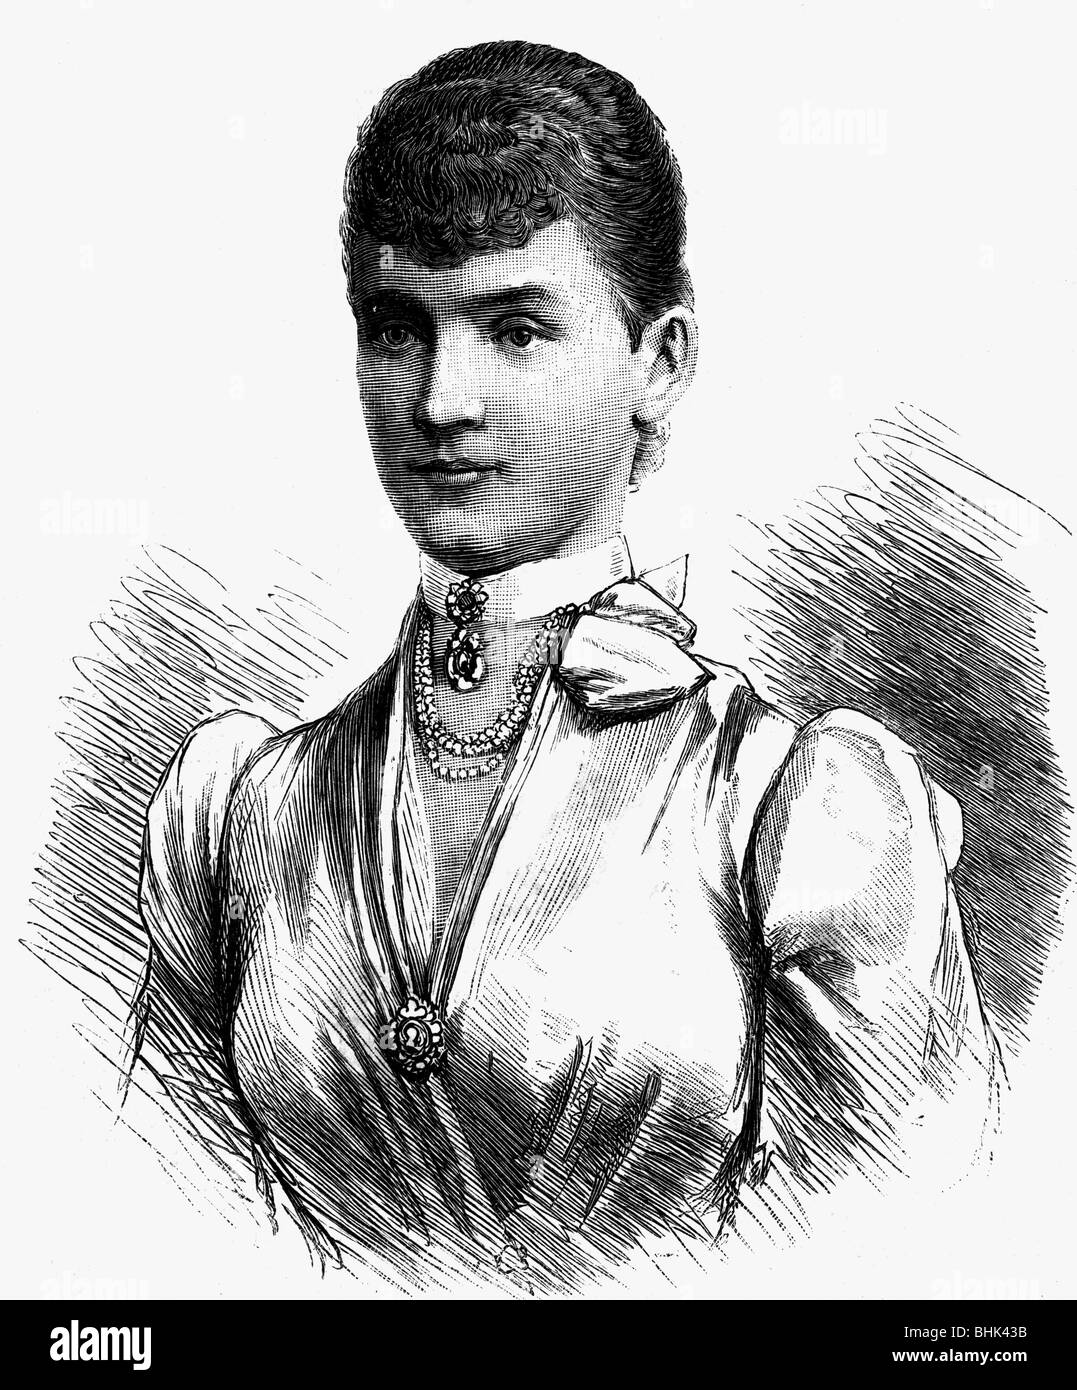 Luise, 6.1.1858 - 2.7.1936, Princesse de Waldeck et Pyrmont 29.4.1891 - 12.5.1893, portrait, gravure de bois, 1890, , Banque D'Images